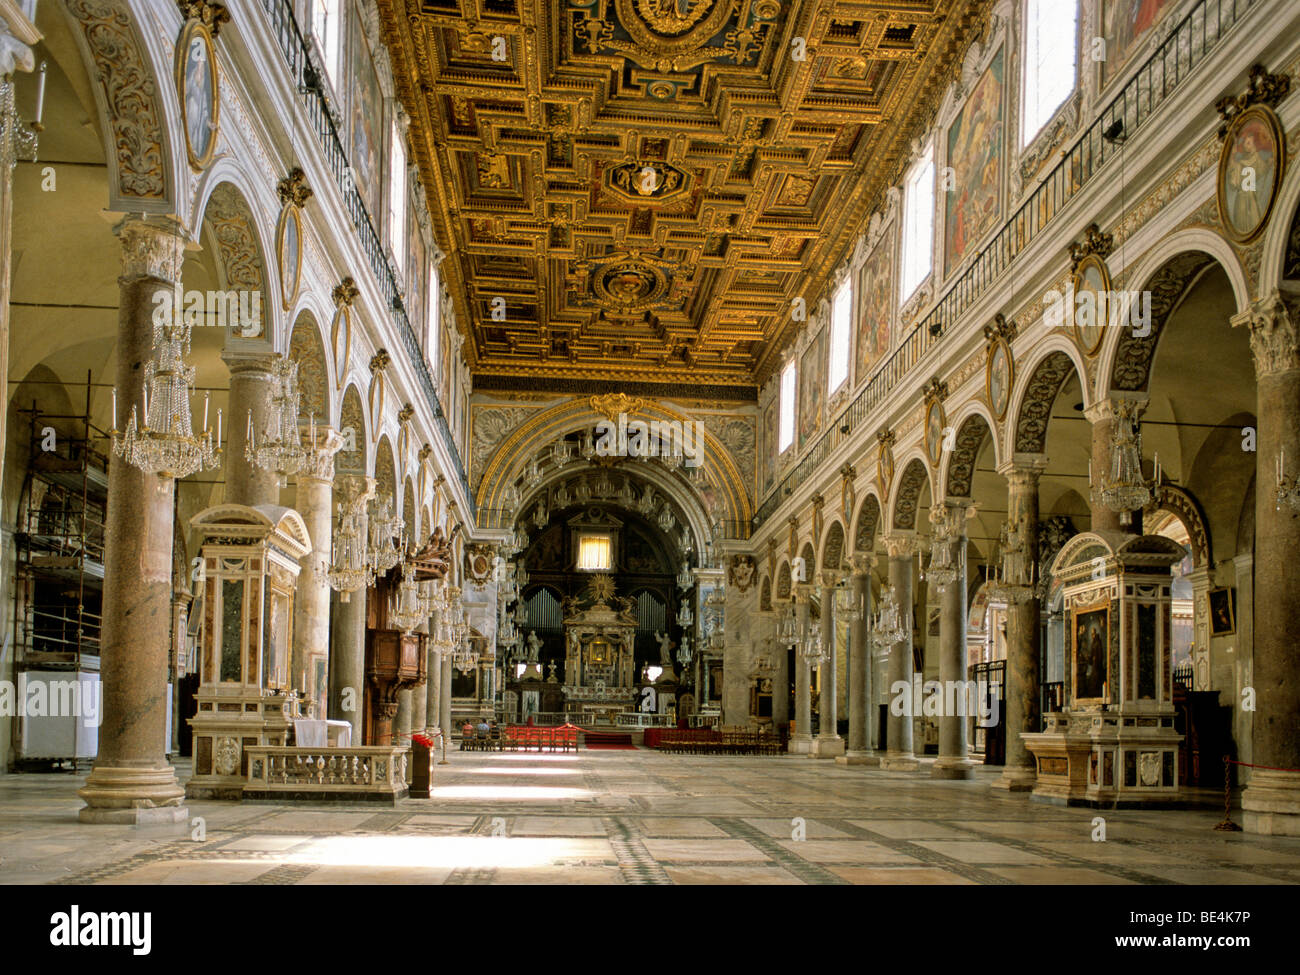 Navata, altare, Basilica di Santa Maria in Aracoeli, Roma, Lazio, l'Italia, Europa Foto Stock